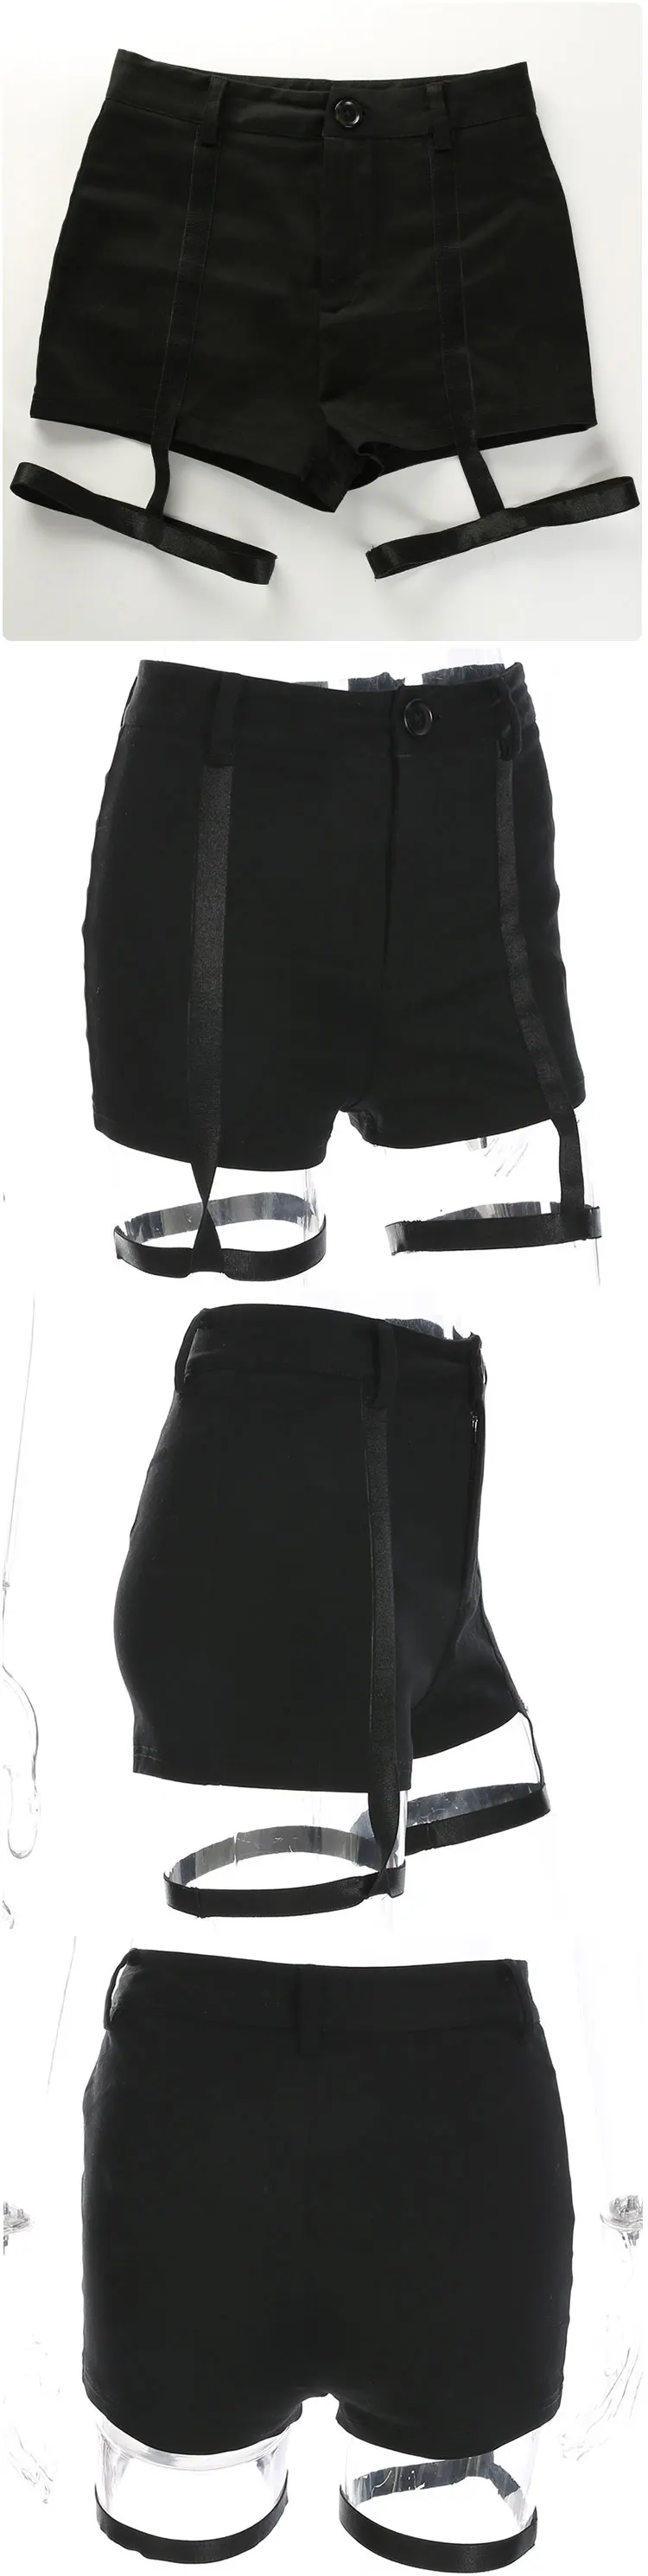 Подвязки шорты пастельный, готический черный Chort De Mujer Rave наряд подтяжки шорты Фестивальная одежда горячие брюки сексуальные мини-шорты